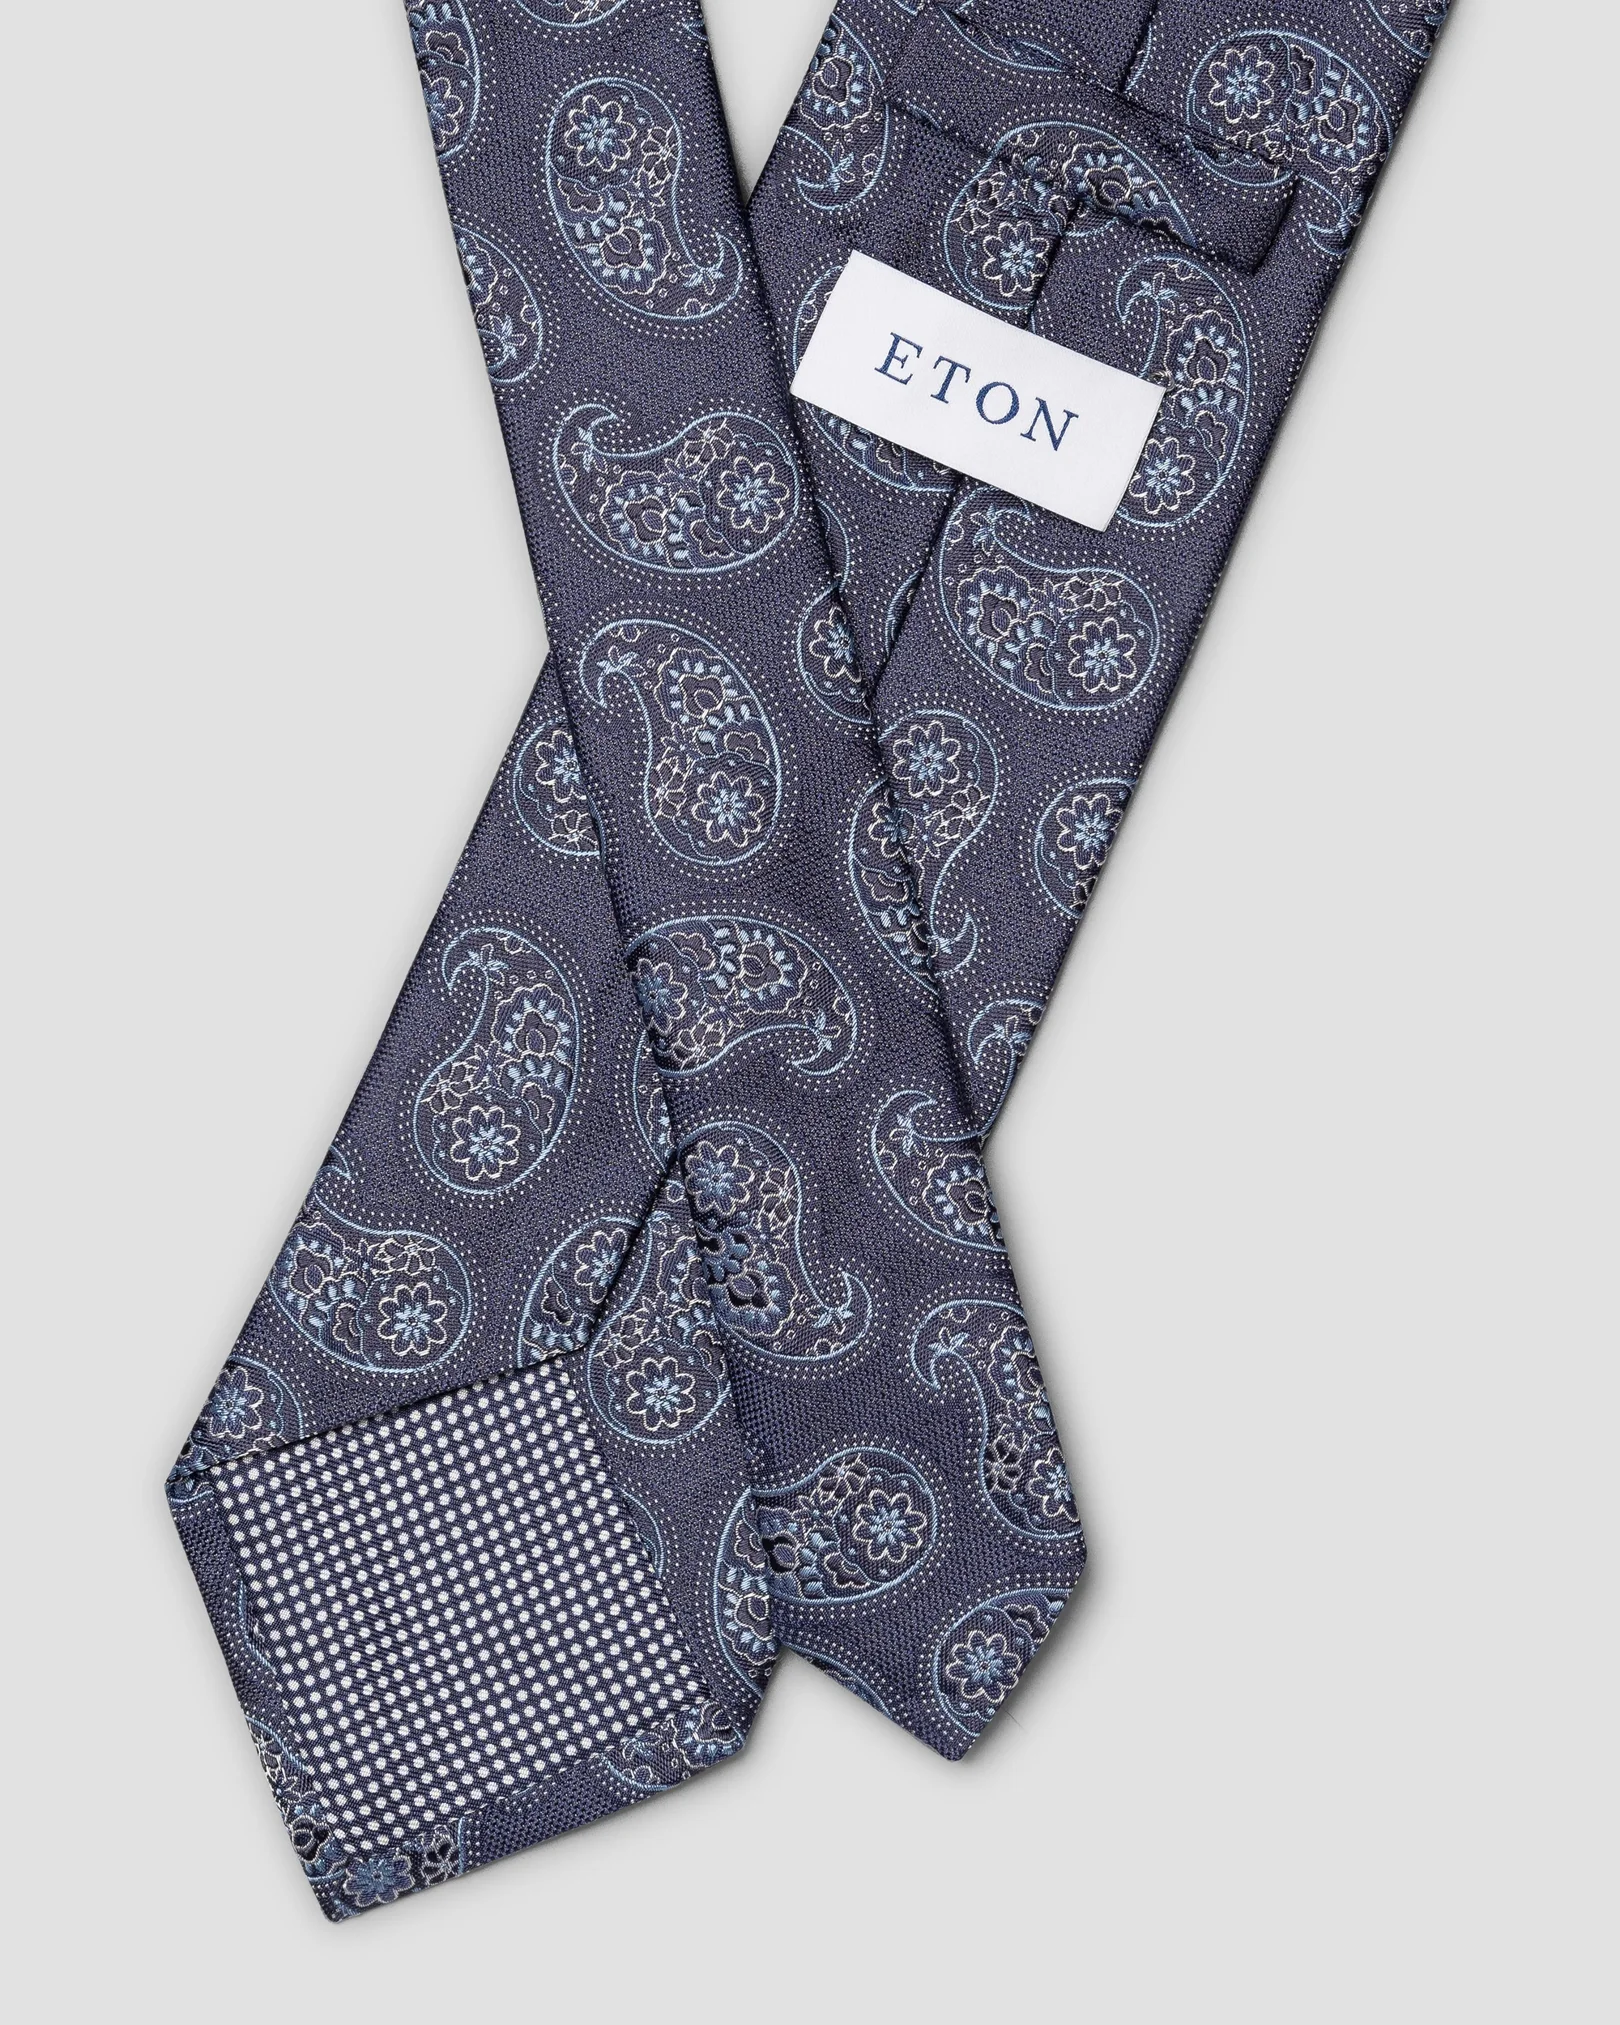 Cravate en soie micro-imprimé cachemire bleu marine